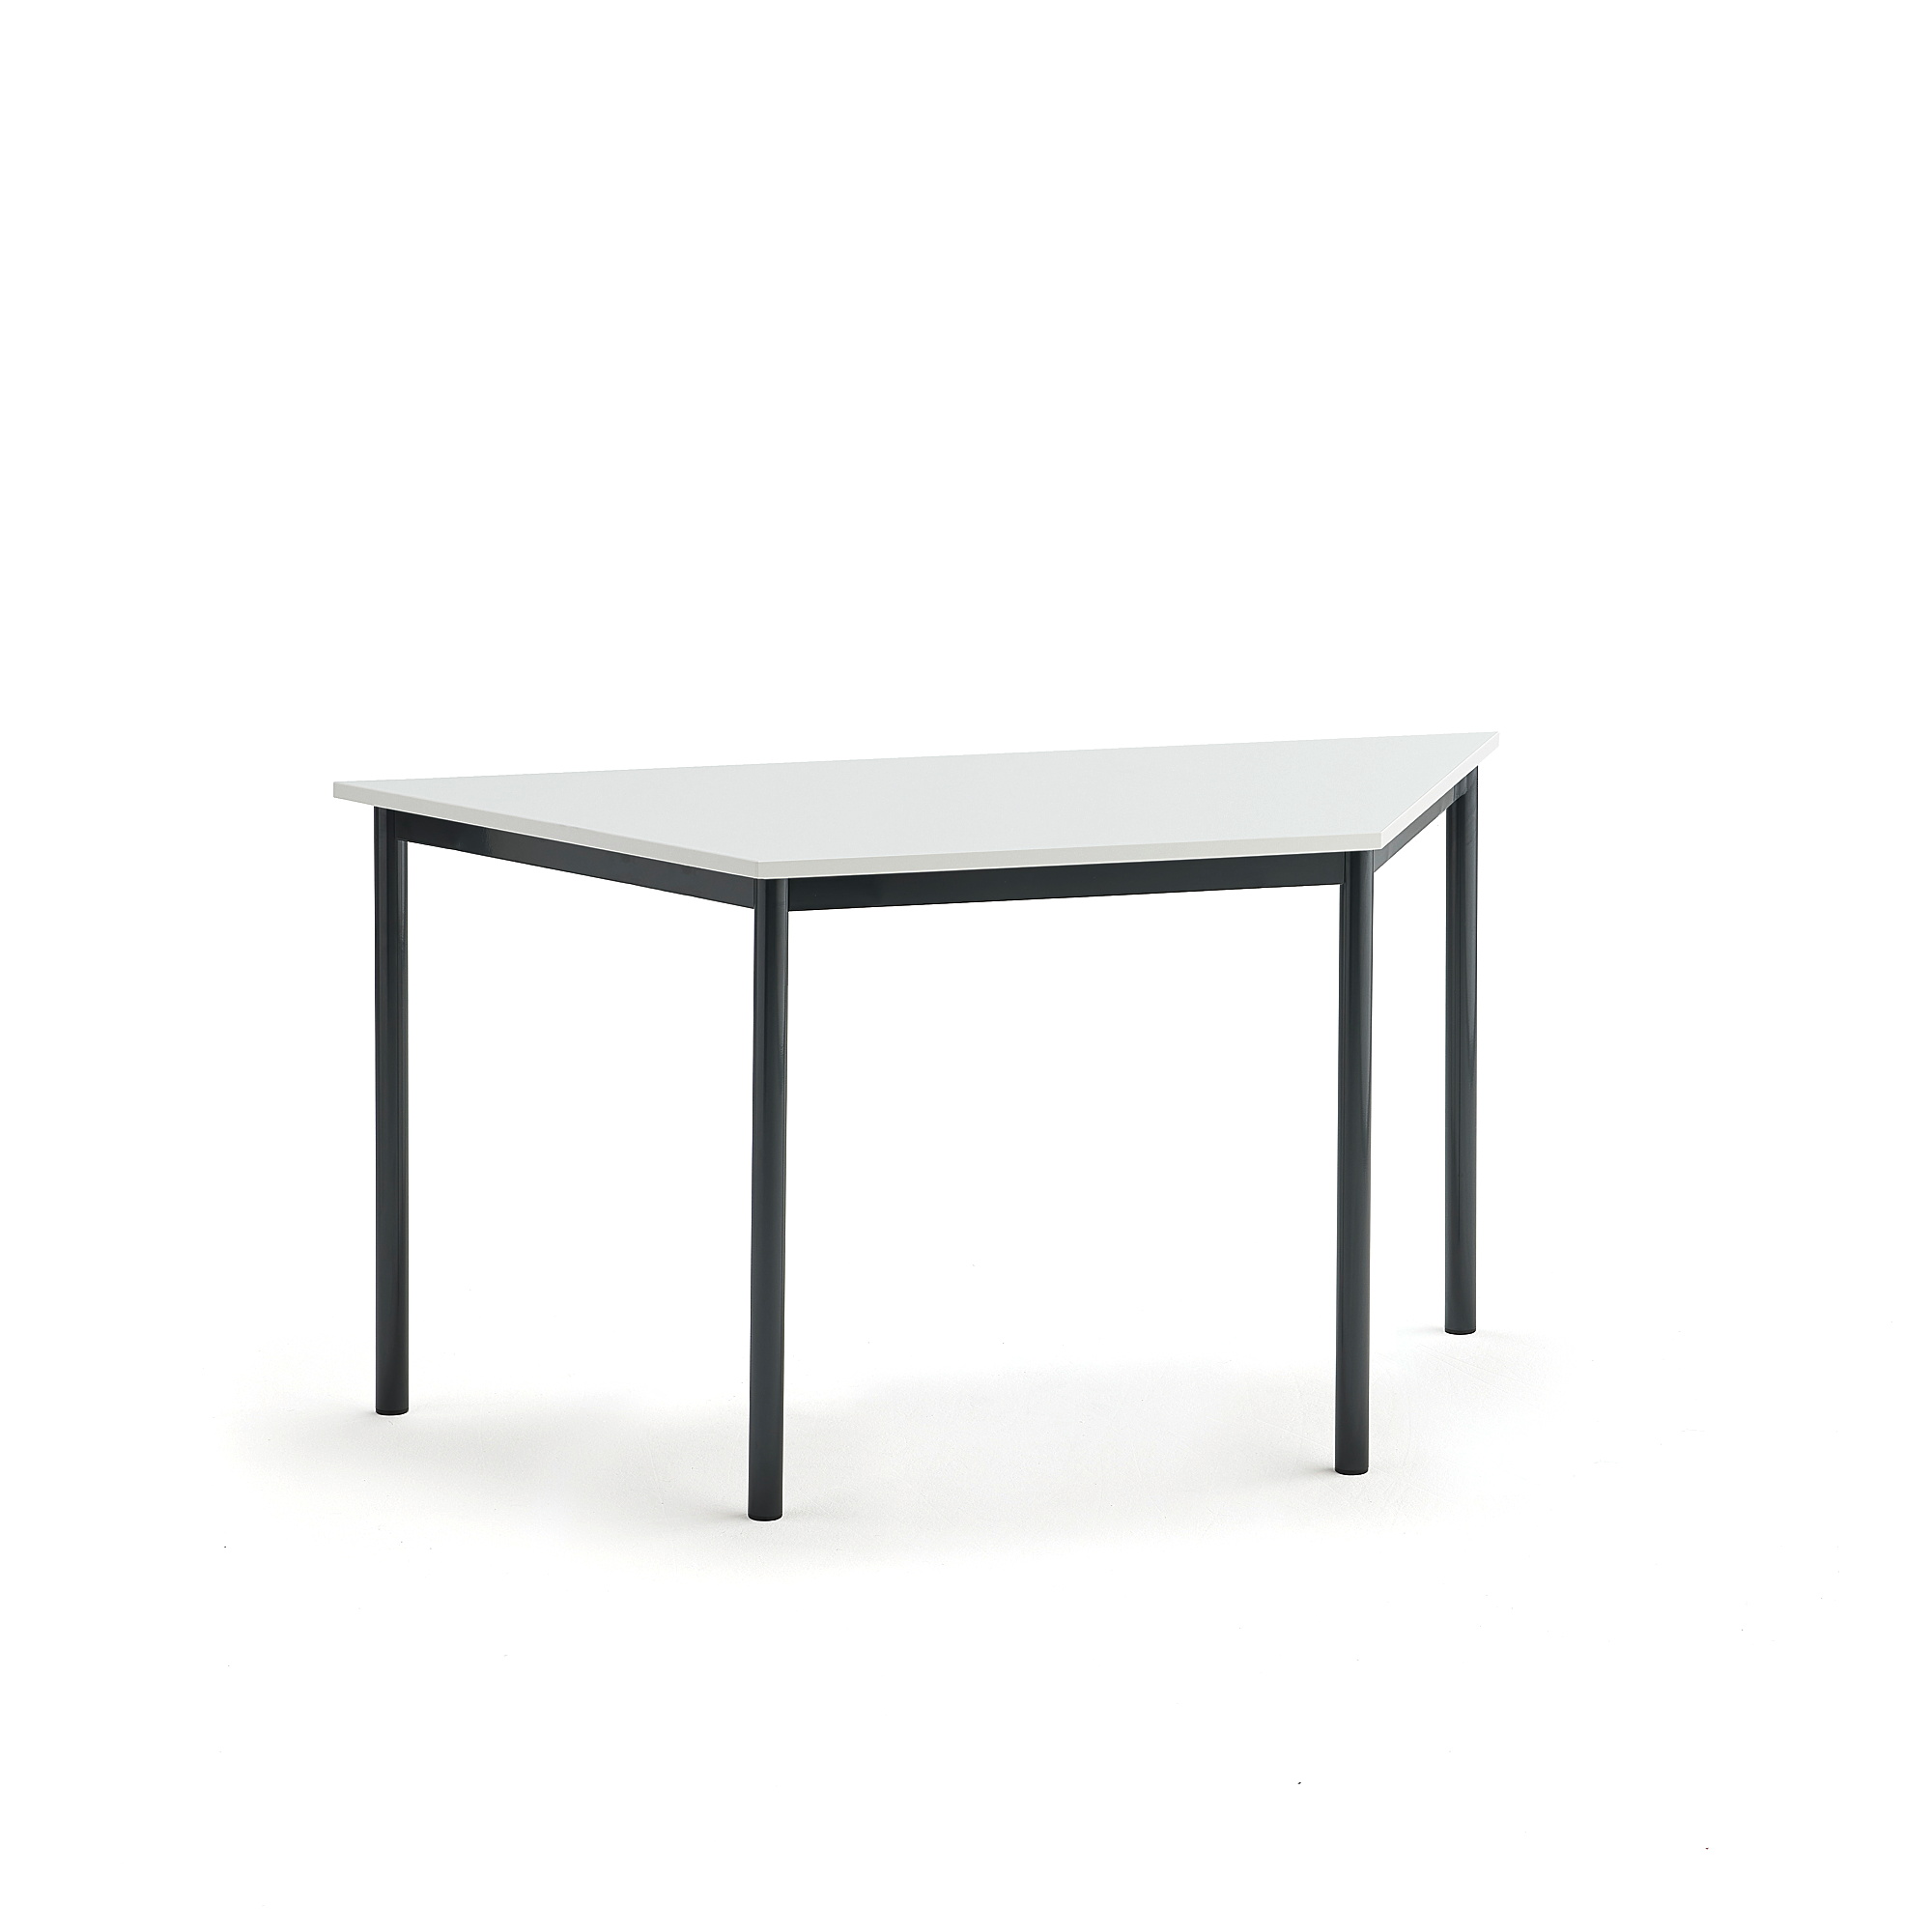 Stůl SONITUS TRAPETS, 1400x700x720 mm, antracitově šedé nohy, HPL deska tlumící hluk, bílá